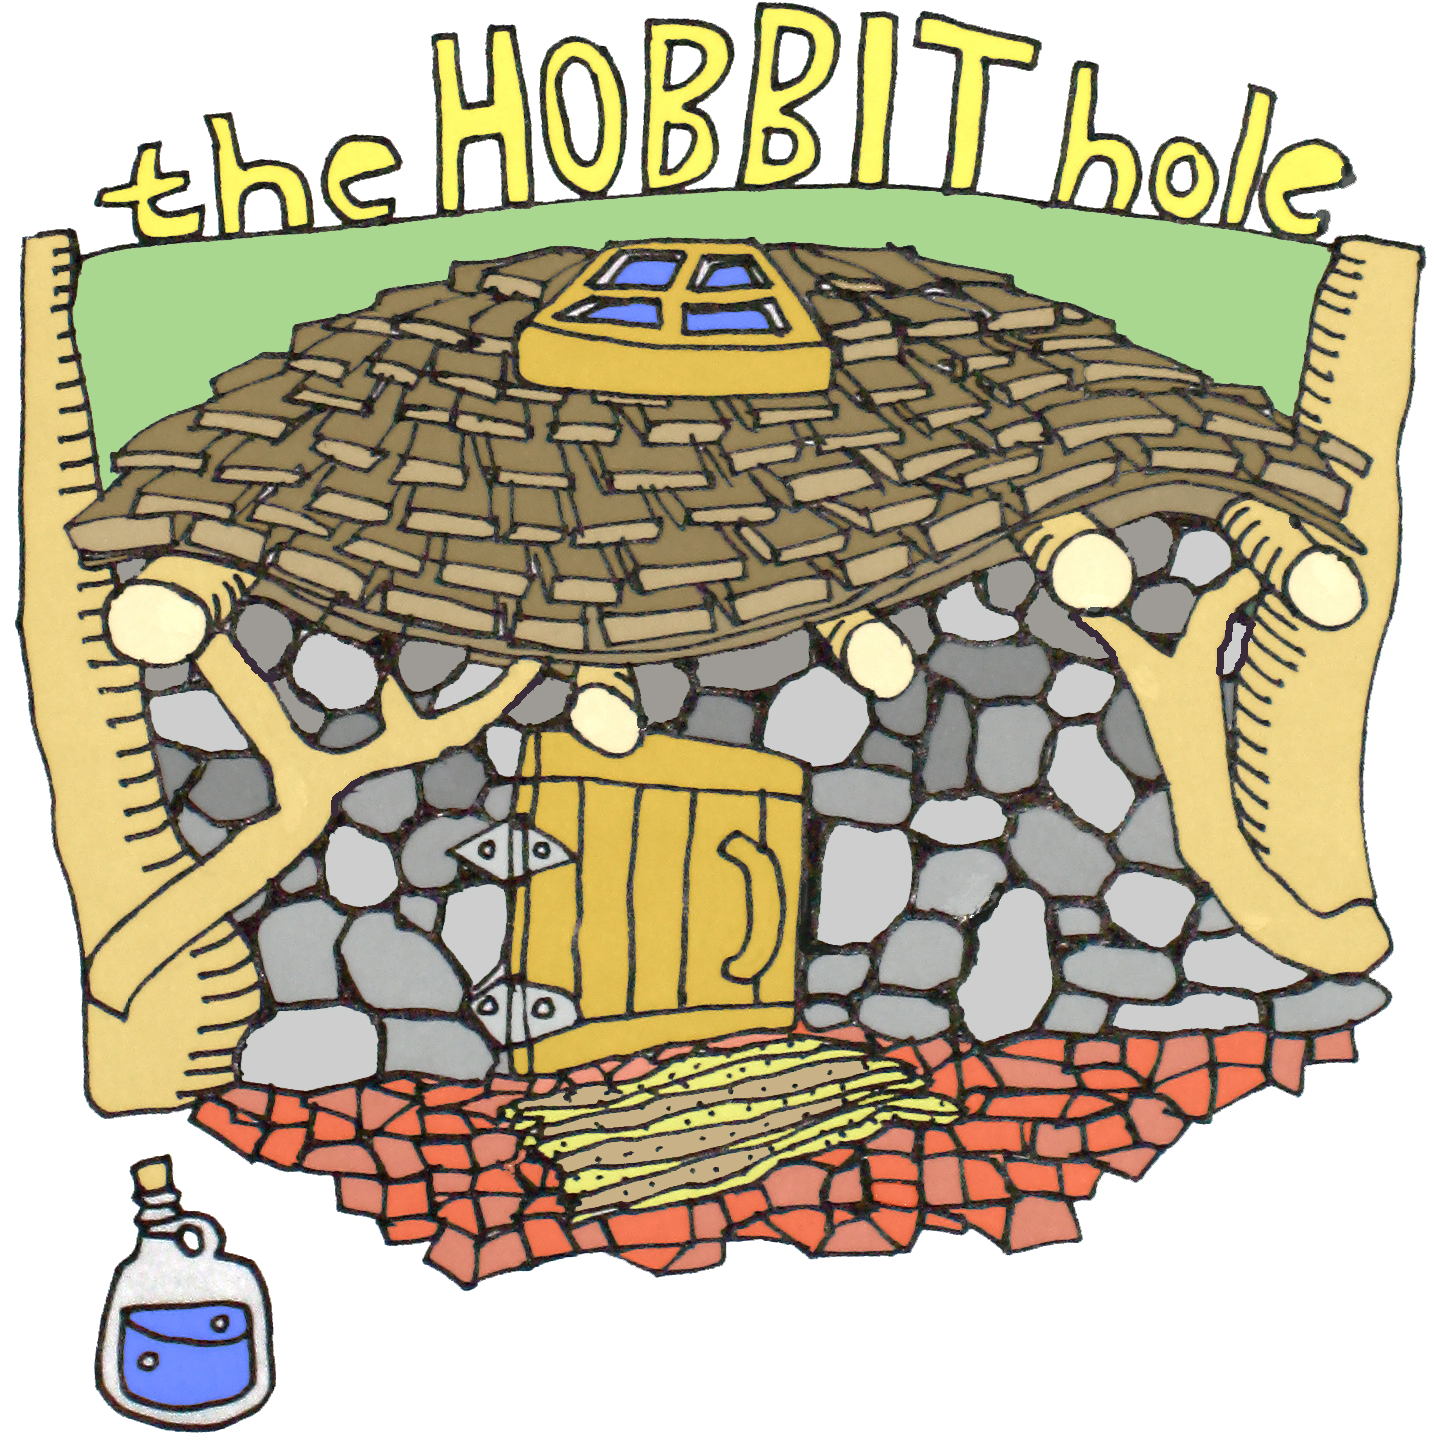 Hobbit Hole